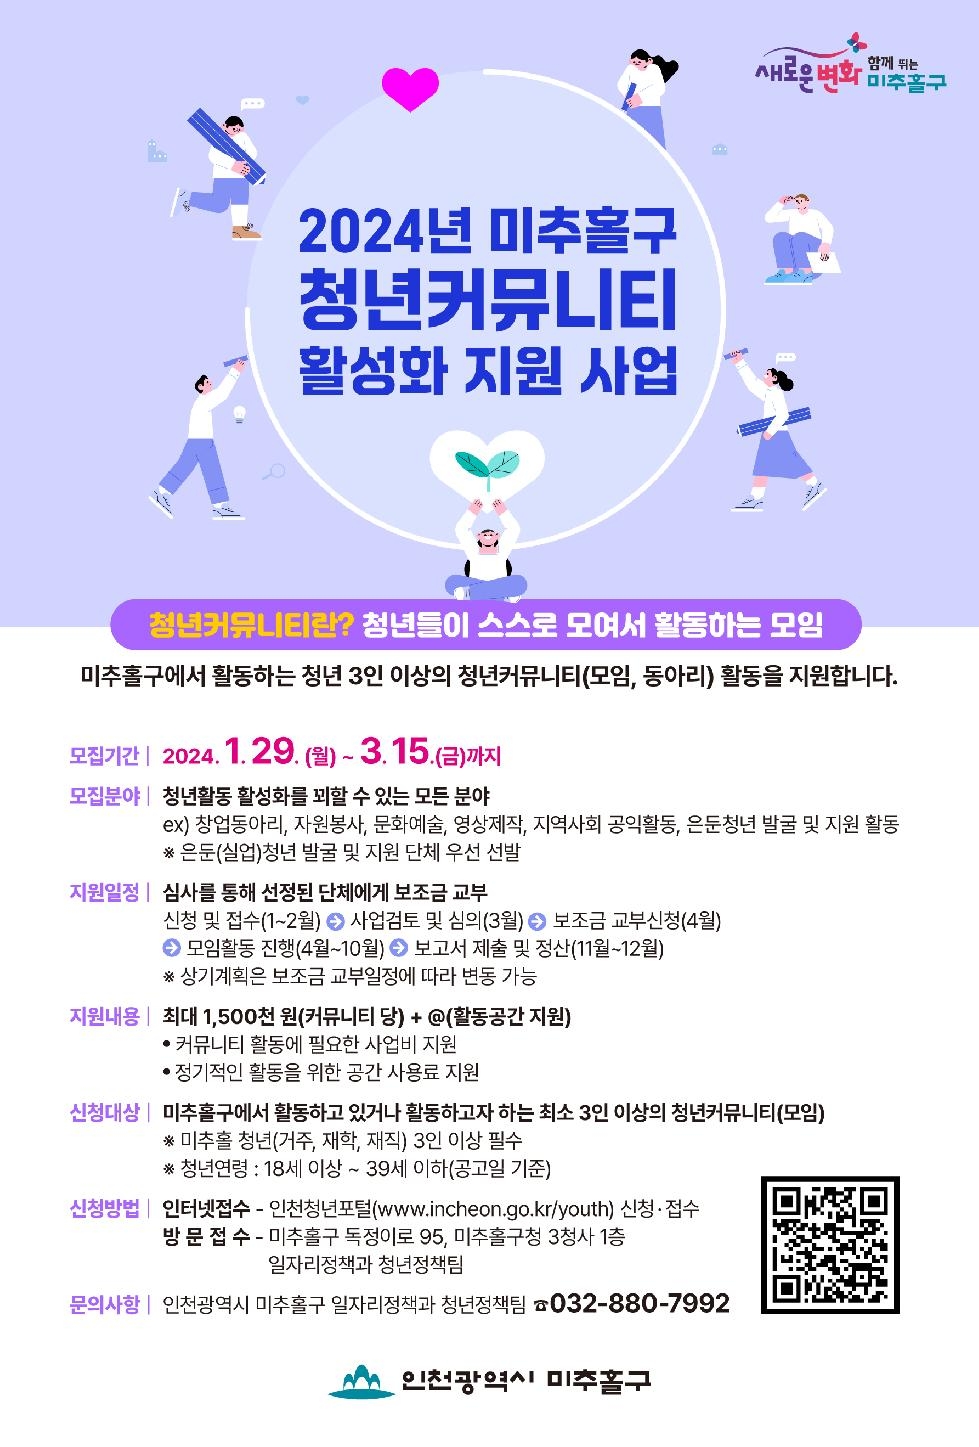 인천 미추홀구, ‘2024년 청년 커뮤니티 활성화 지원 사업’ 참여 단체 모집해